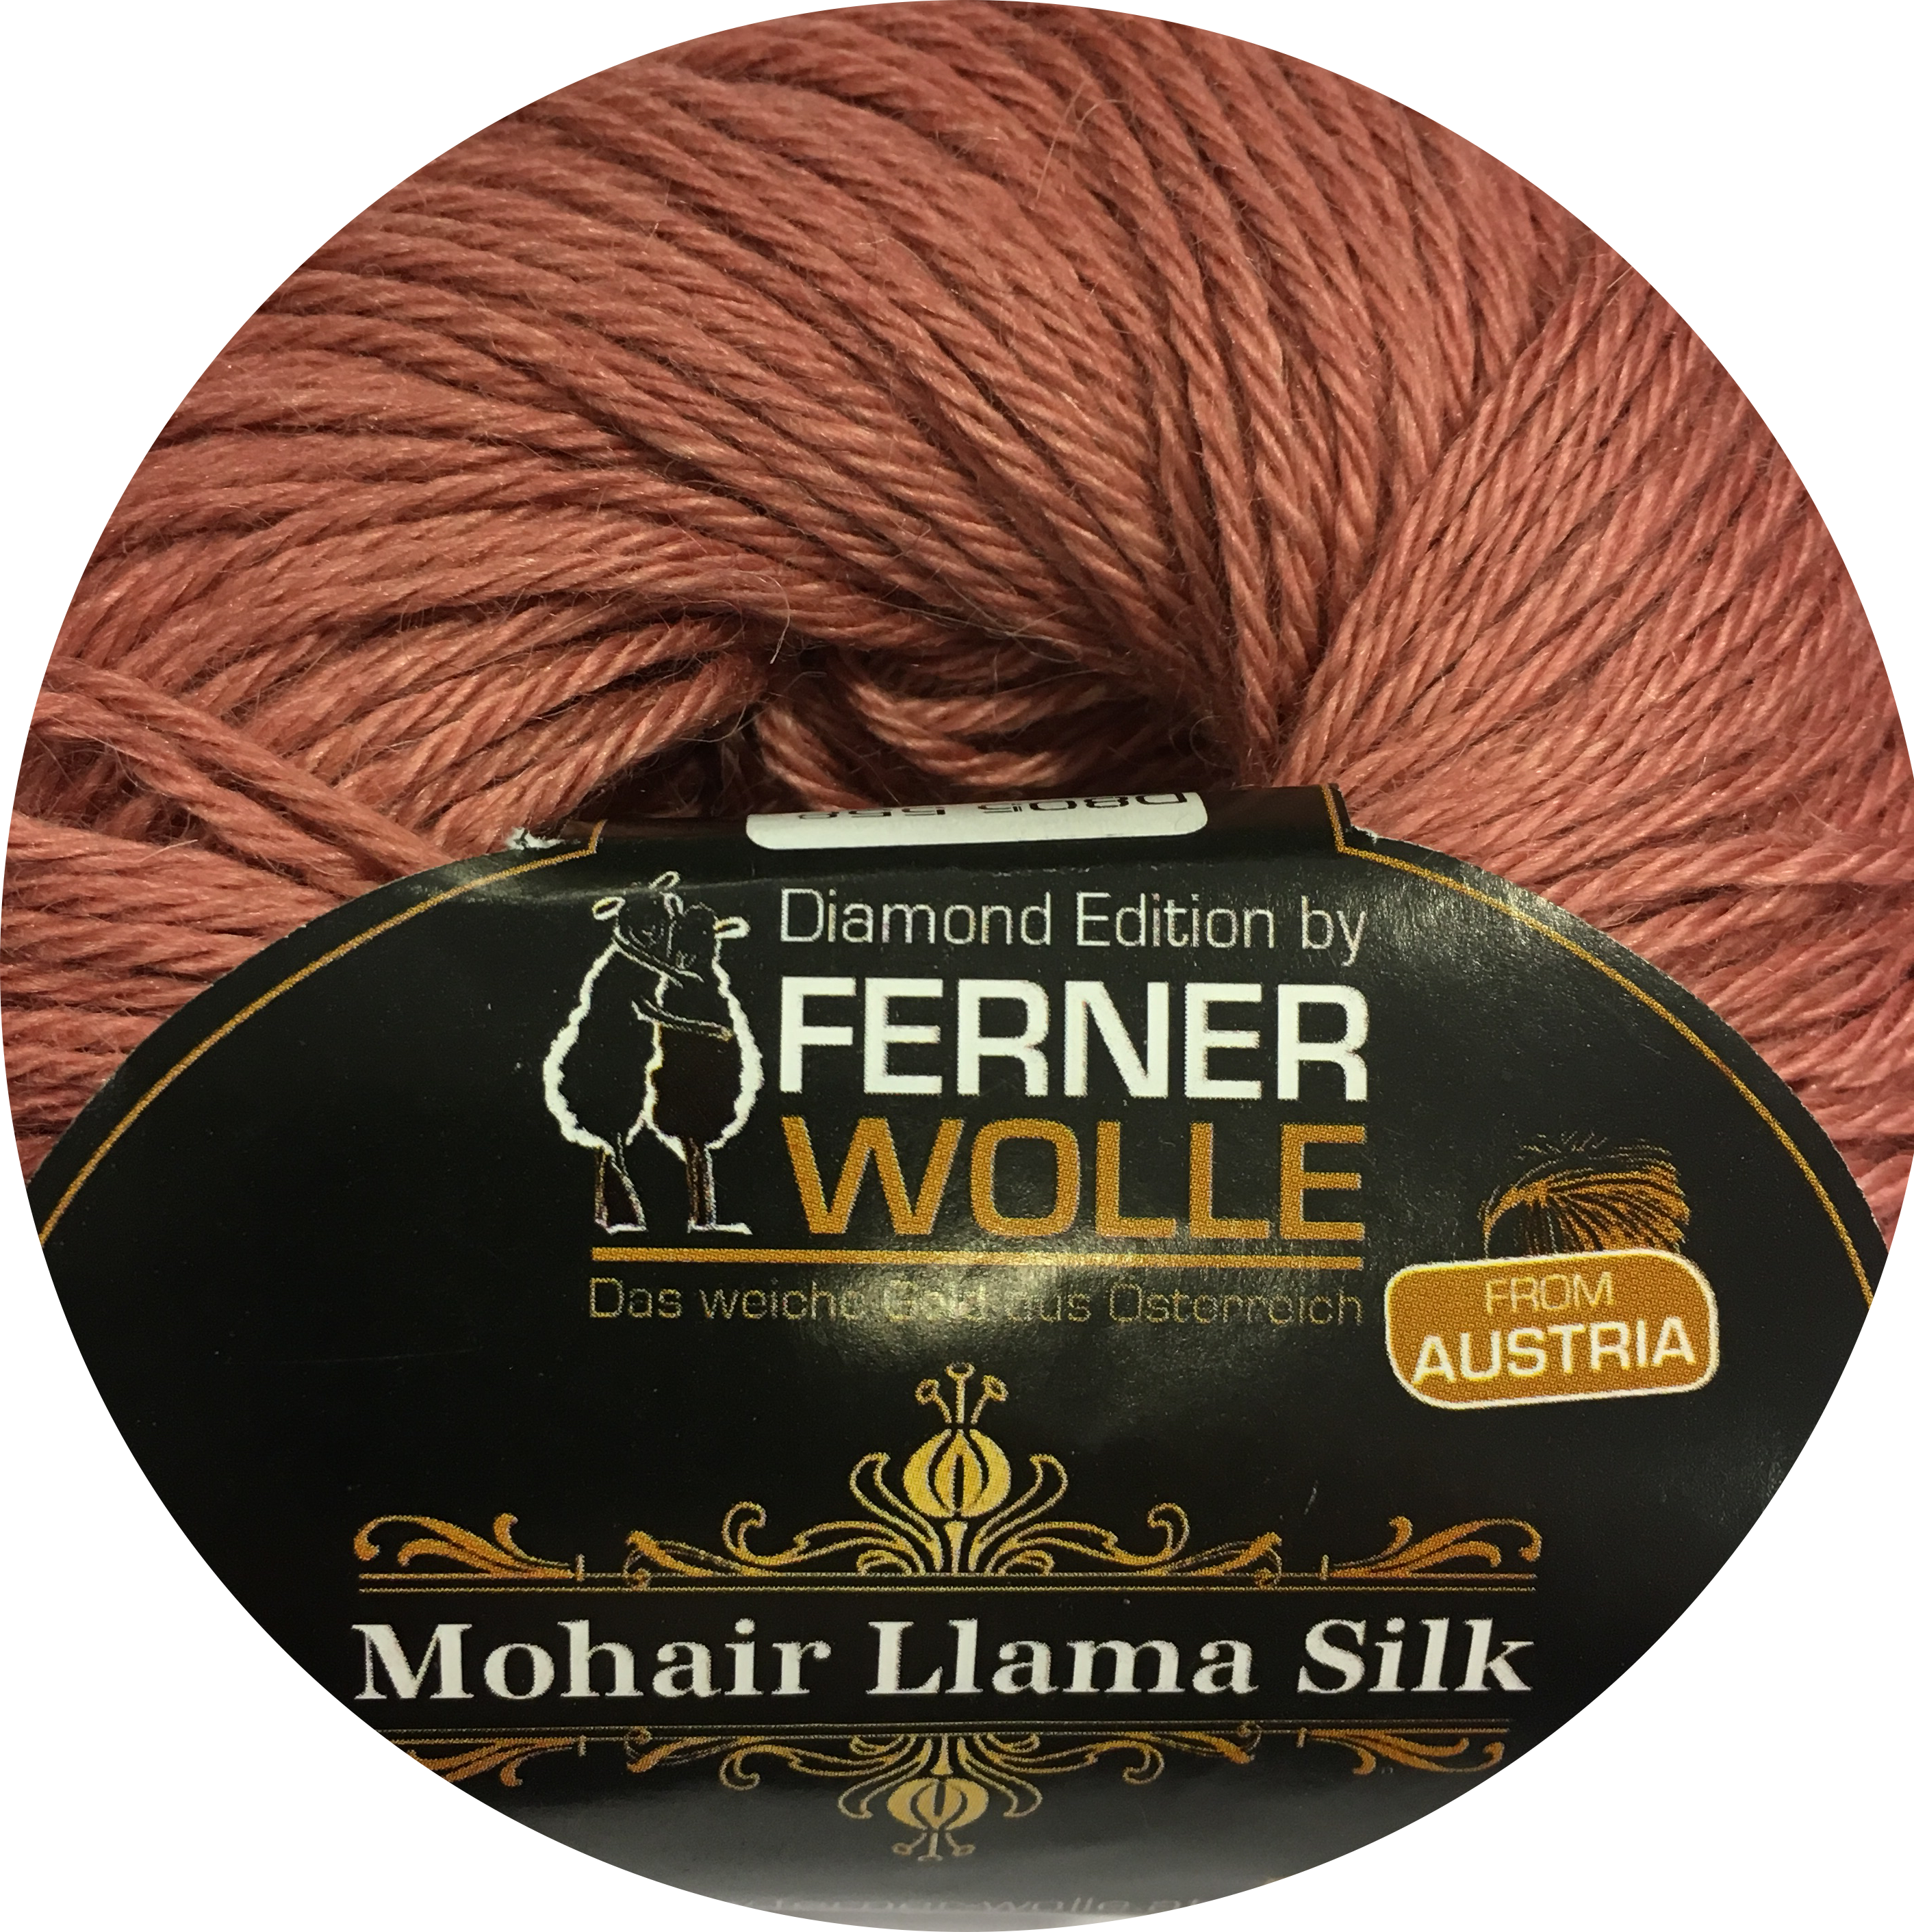 Ferner Mohair Llama Silk